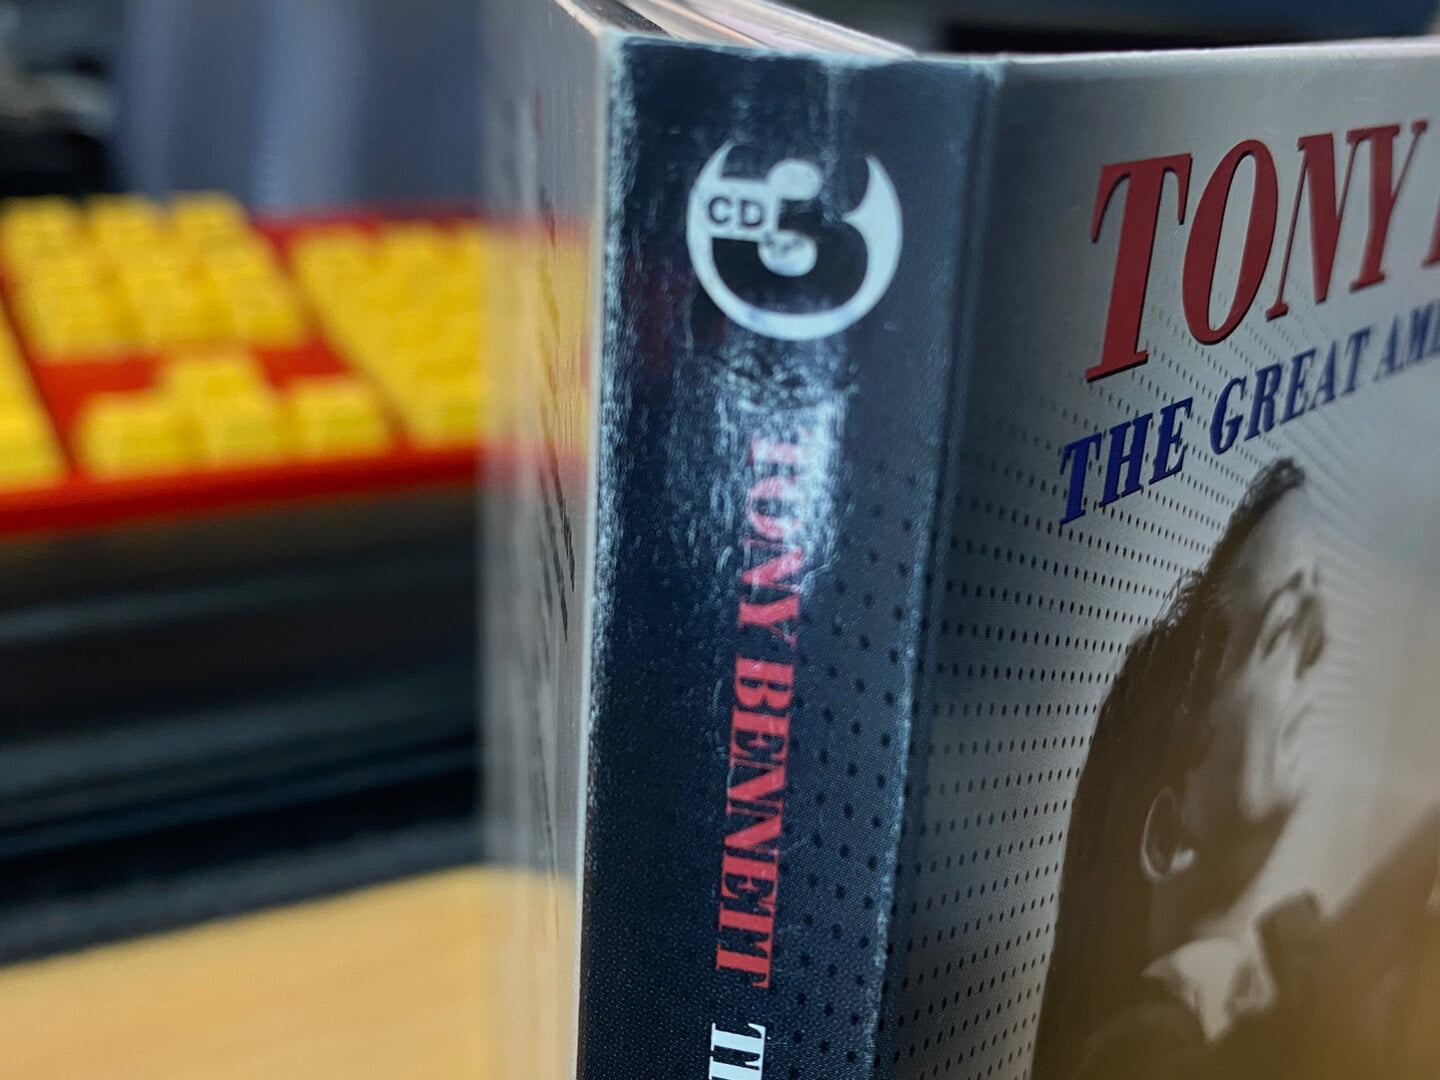 토니 베넷 - Tony Bennett - The Great American Songbook 3Cds [디지팩] [E.U발매]